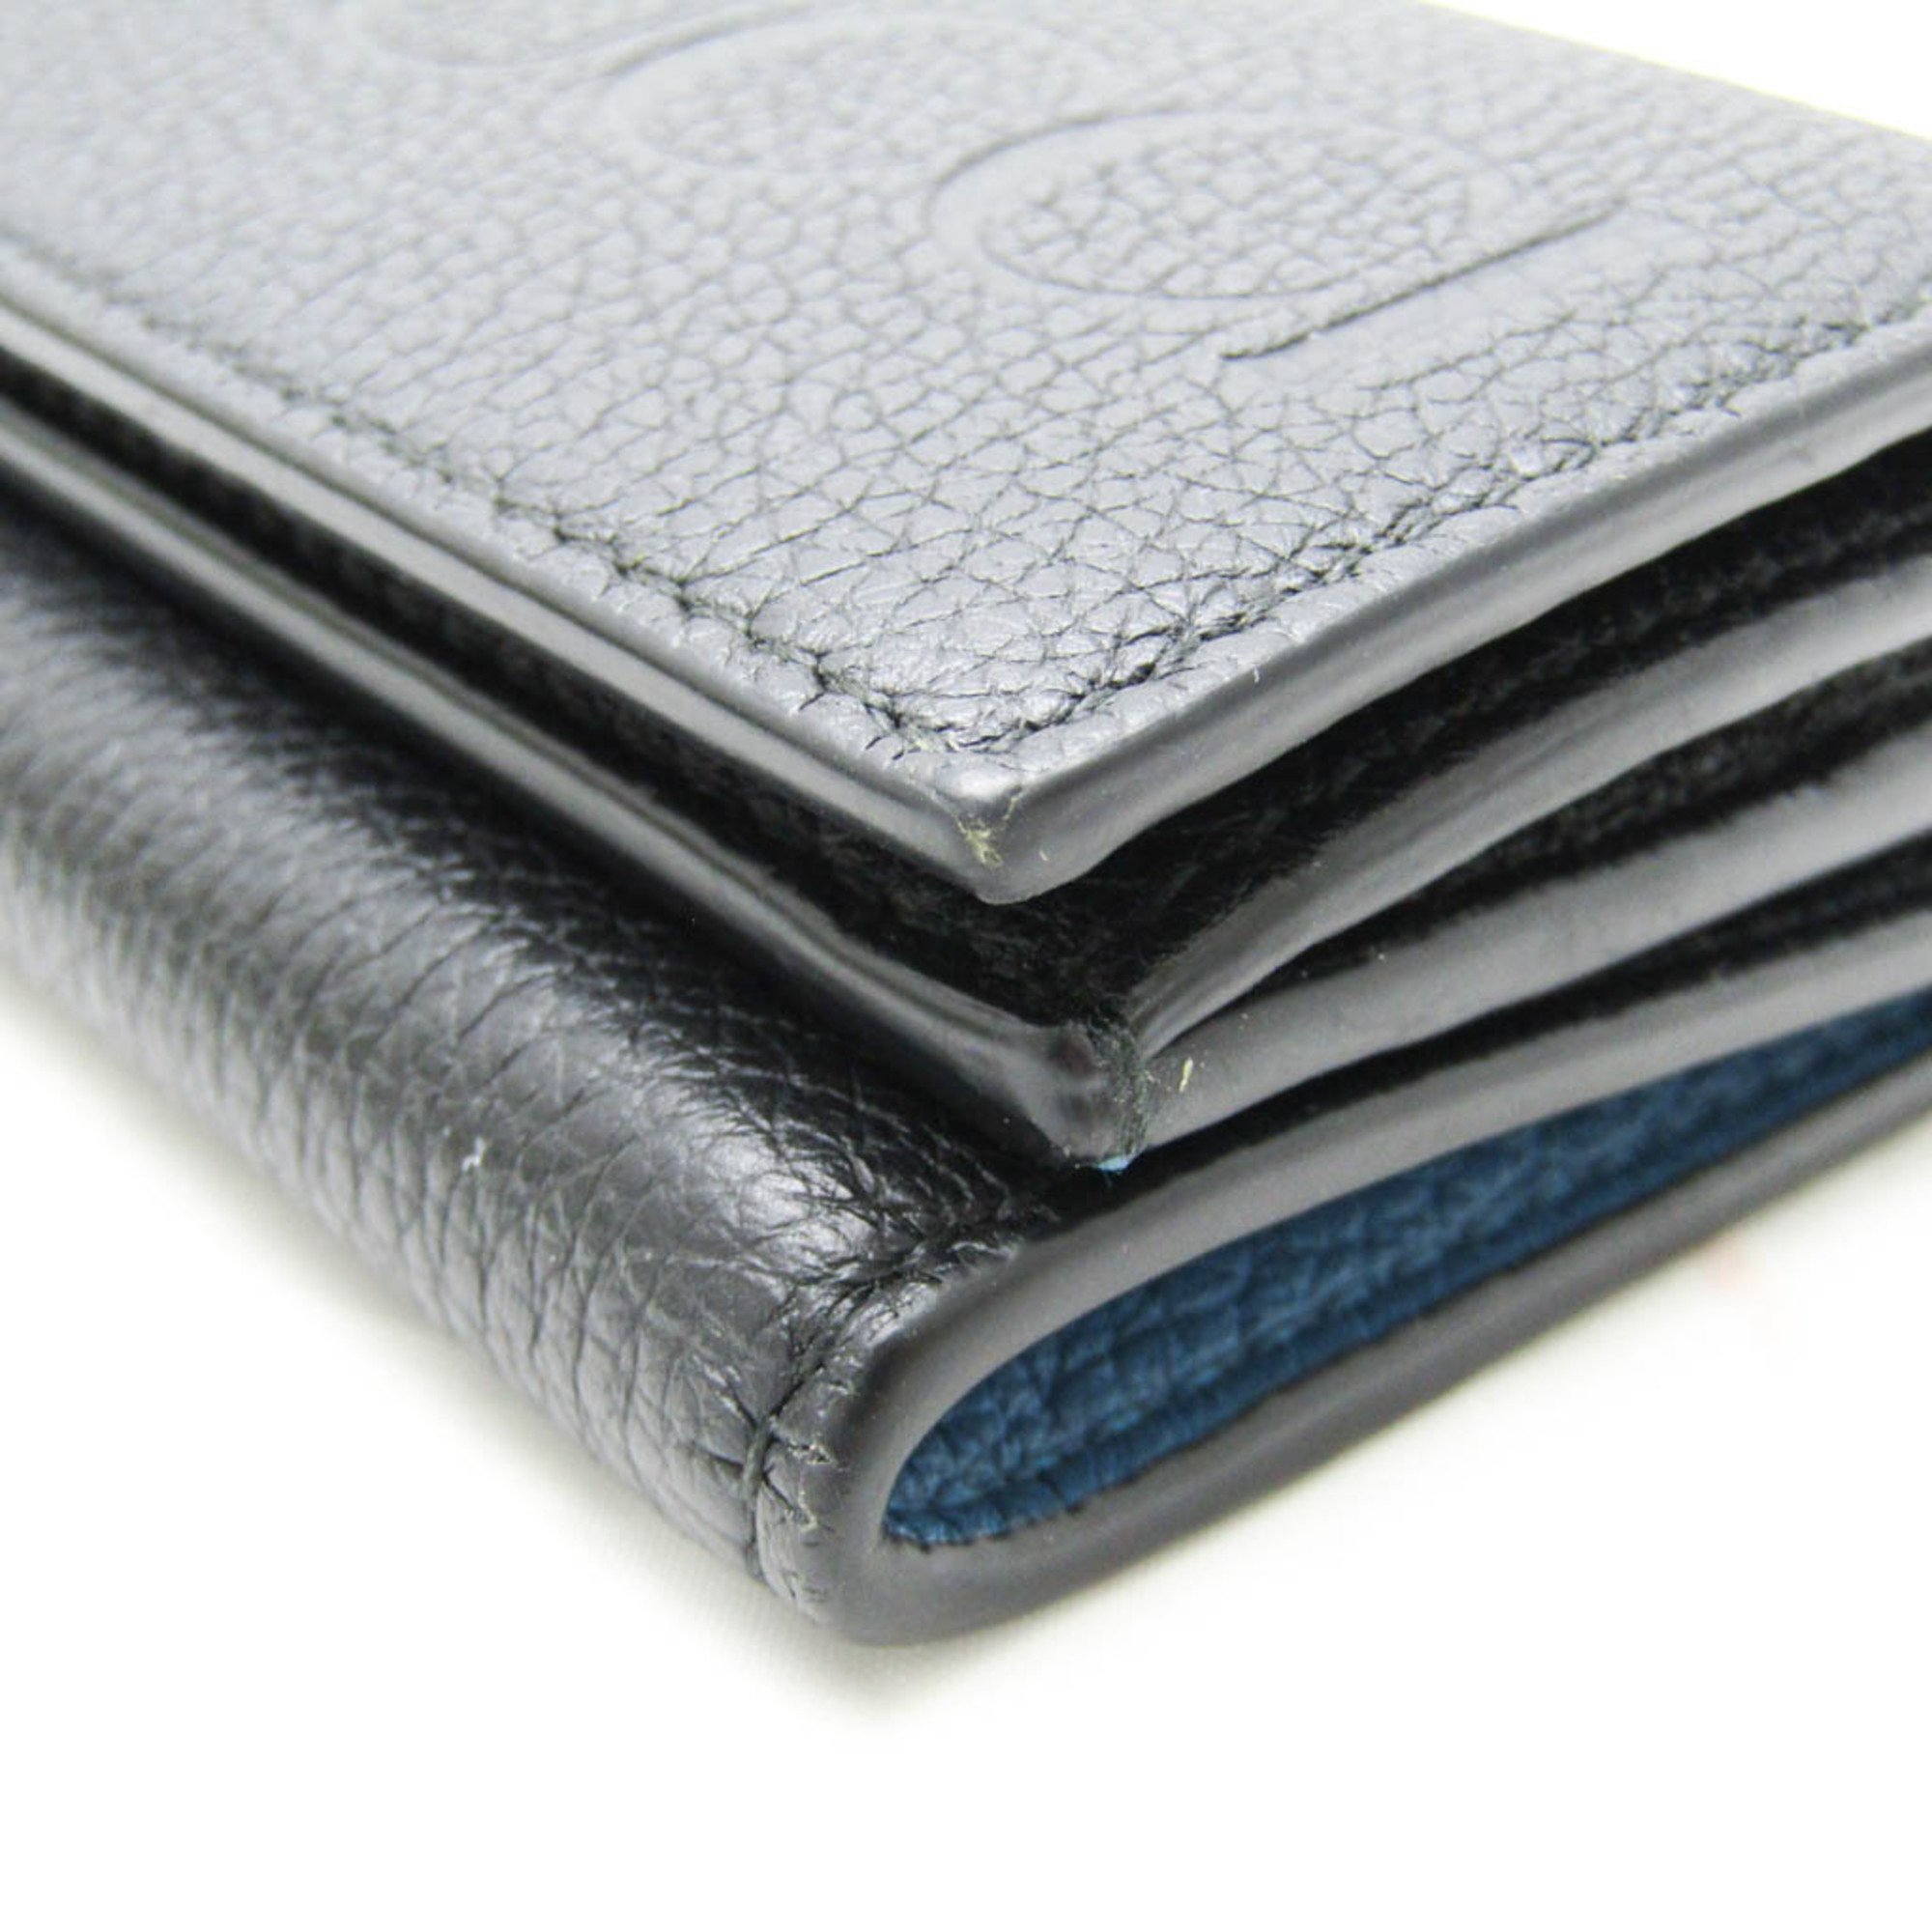 グッチ(Gucci) ロゴ ミニウォレット 736151 レディース,メンズ レザー 財布（三つ折り） ブラック